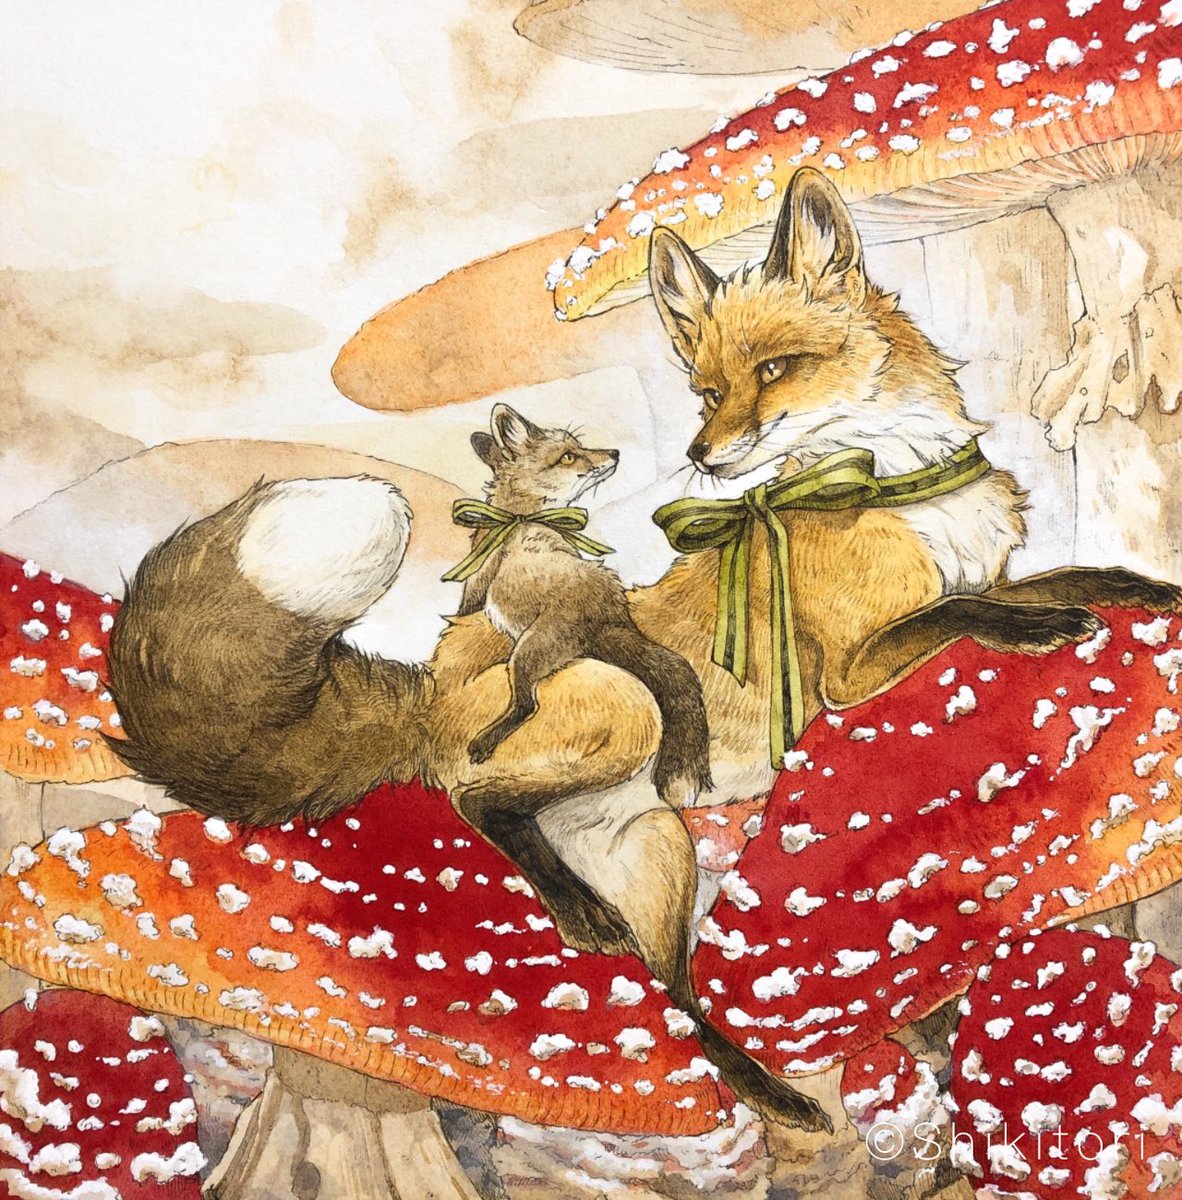 「追いきつね?
#天狐の日だしTLを狐で埋める 
#天狐の日 」|シキトリのイラスト